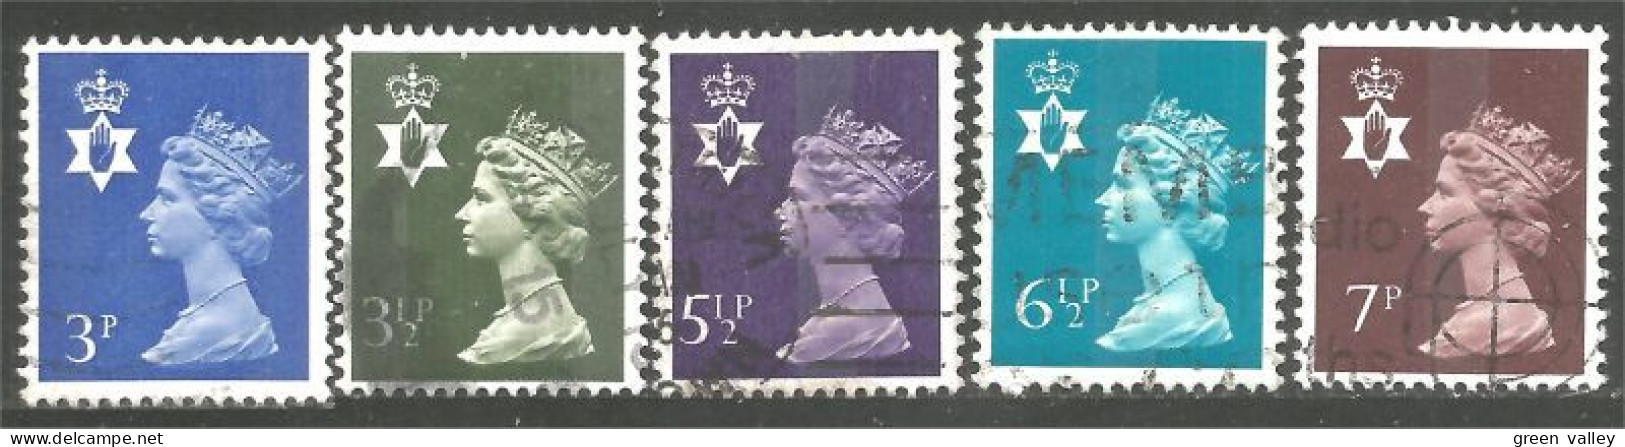 414 G-B Regionals Northern Ireland 5 Stamps Queen Elizabeth (REG-29) - Irlande Du Nord